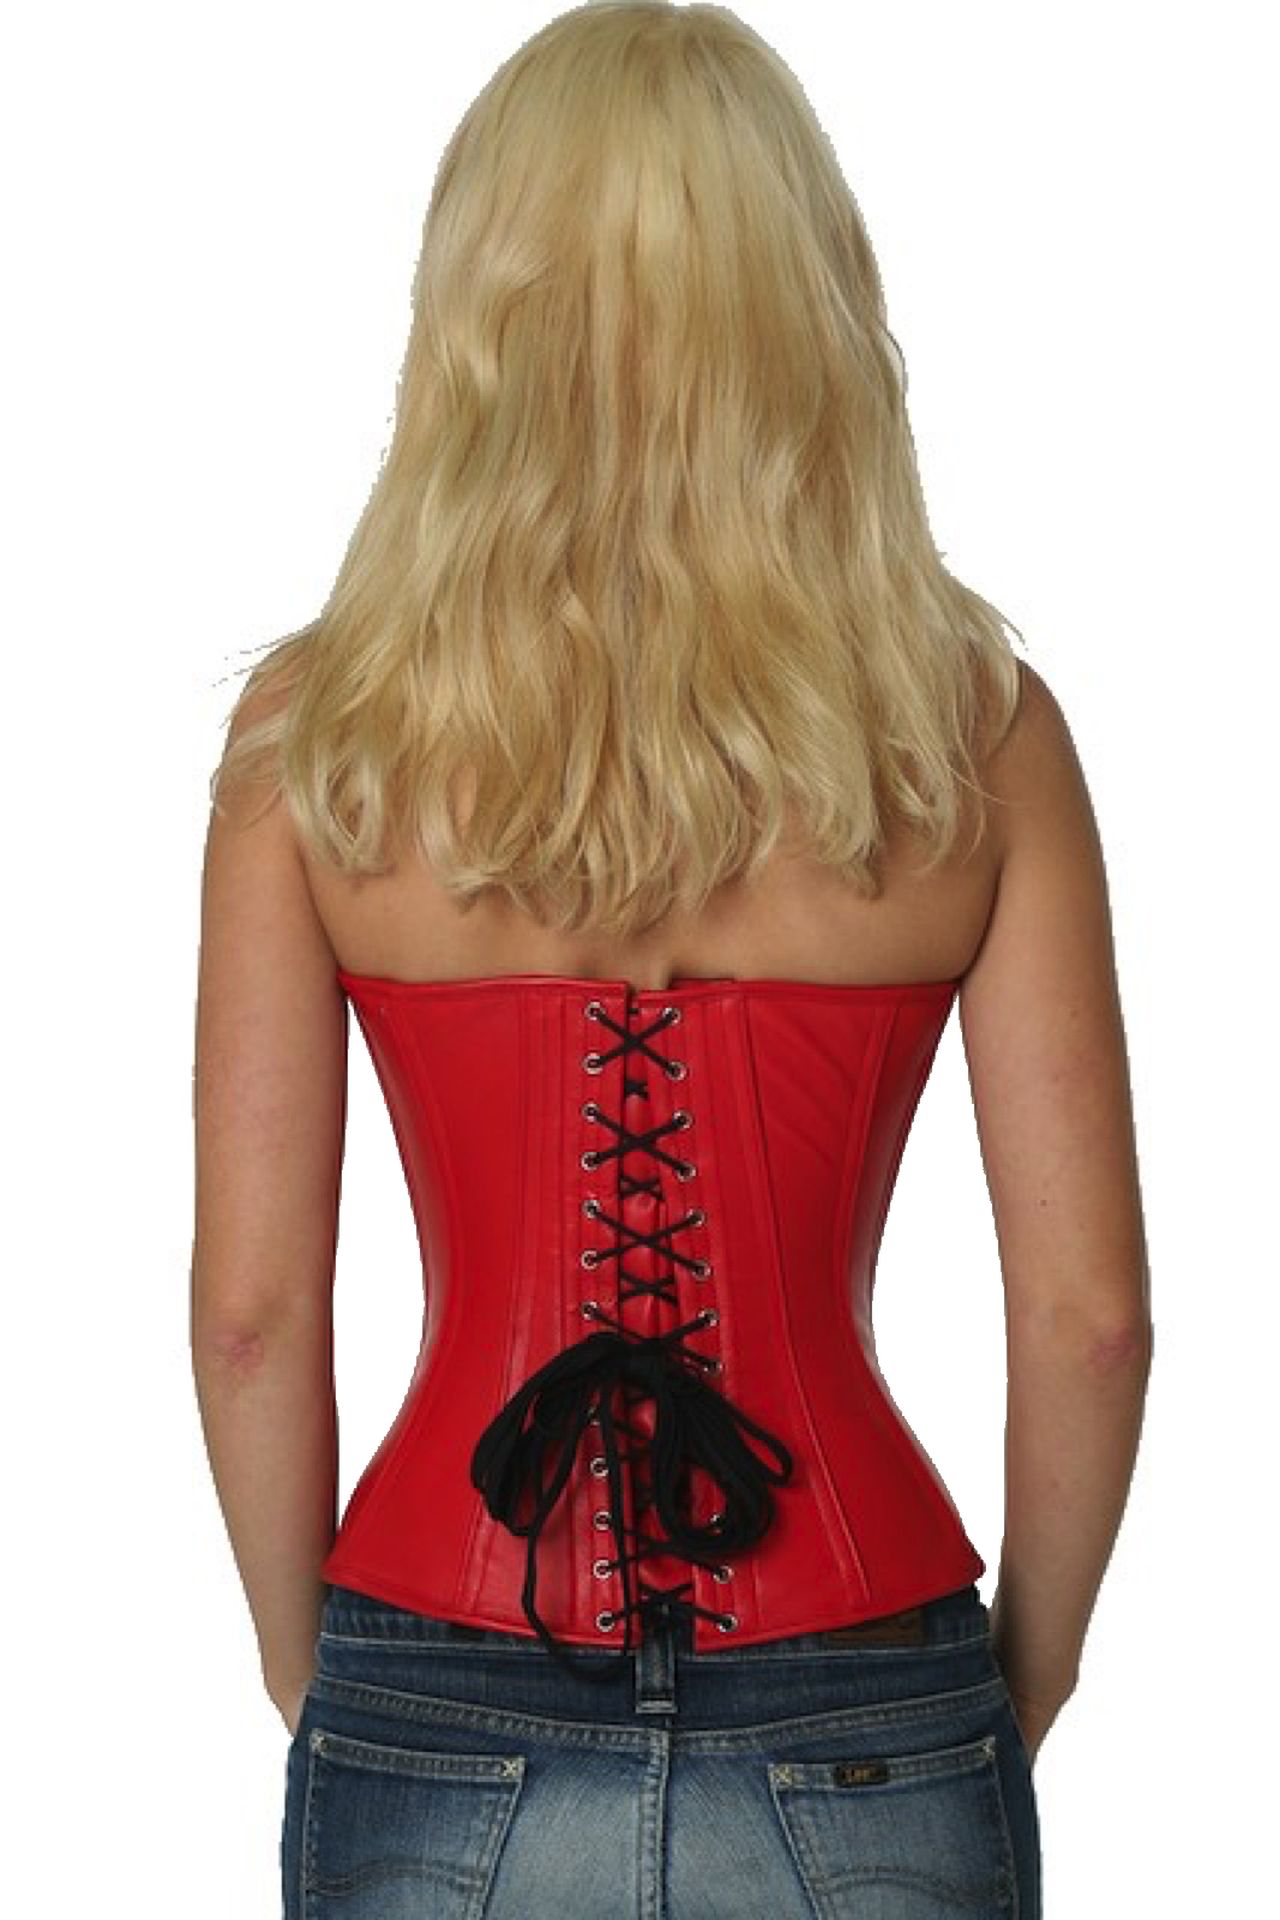 Leren corset rood halfborst Korset lh23